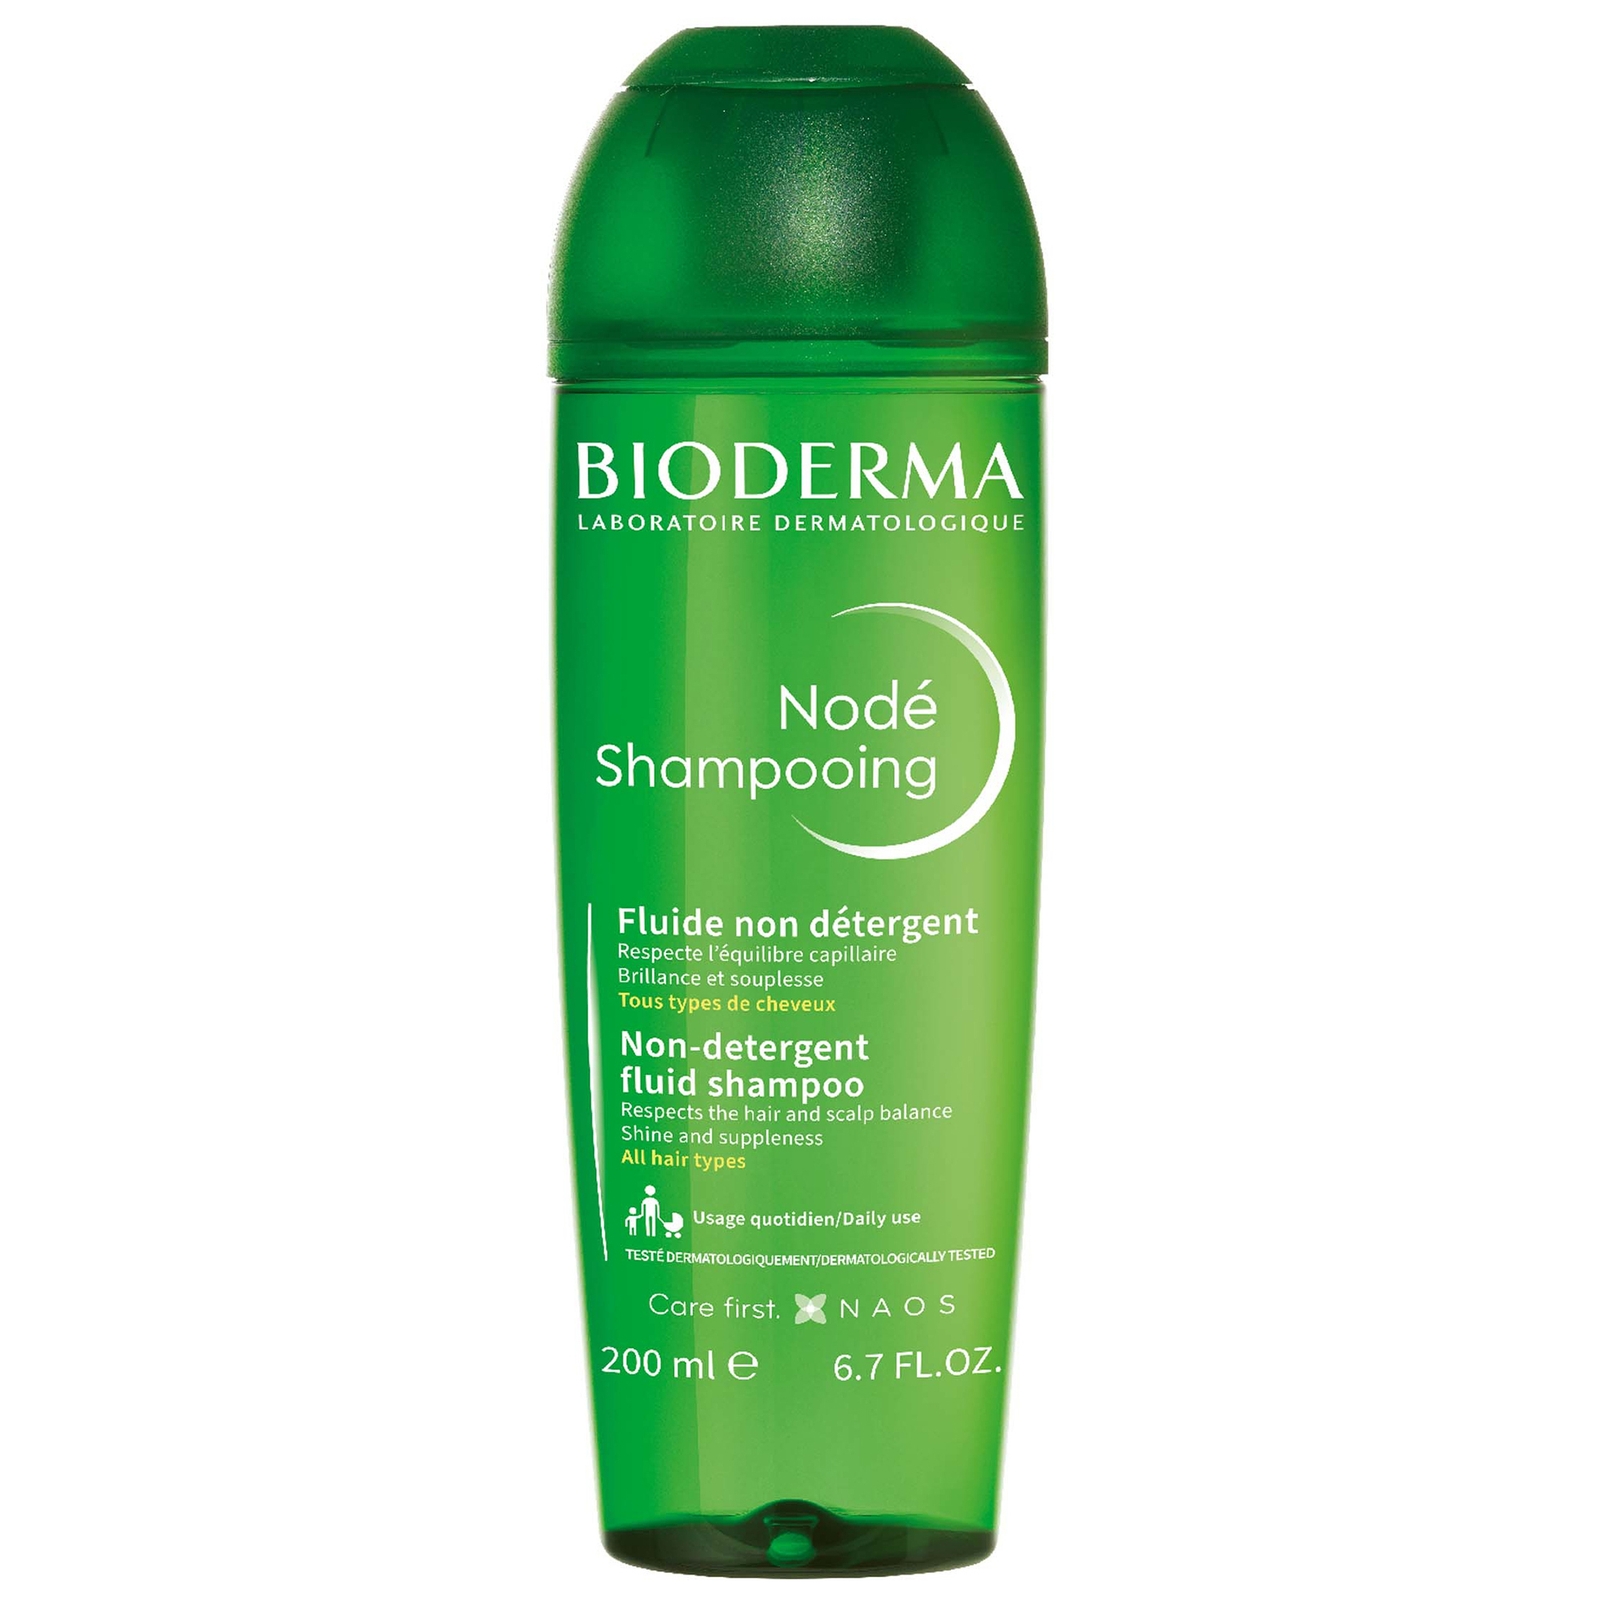 Bioderma Node Shampooing Fluide shampoo delicato, rispetta il film idrolipidico di capelli e cuoio capelluto